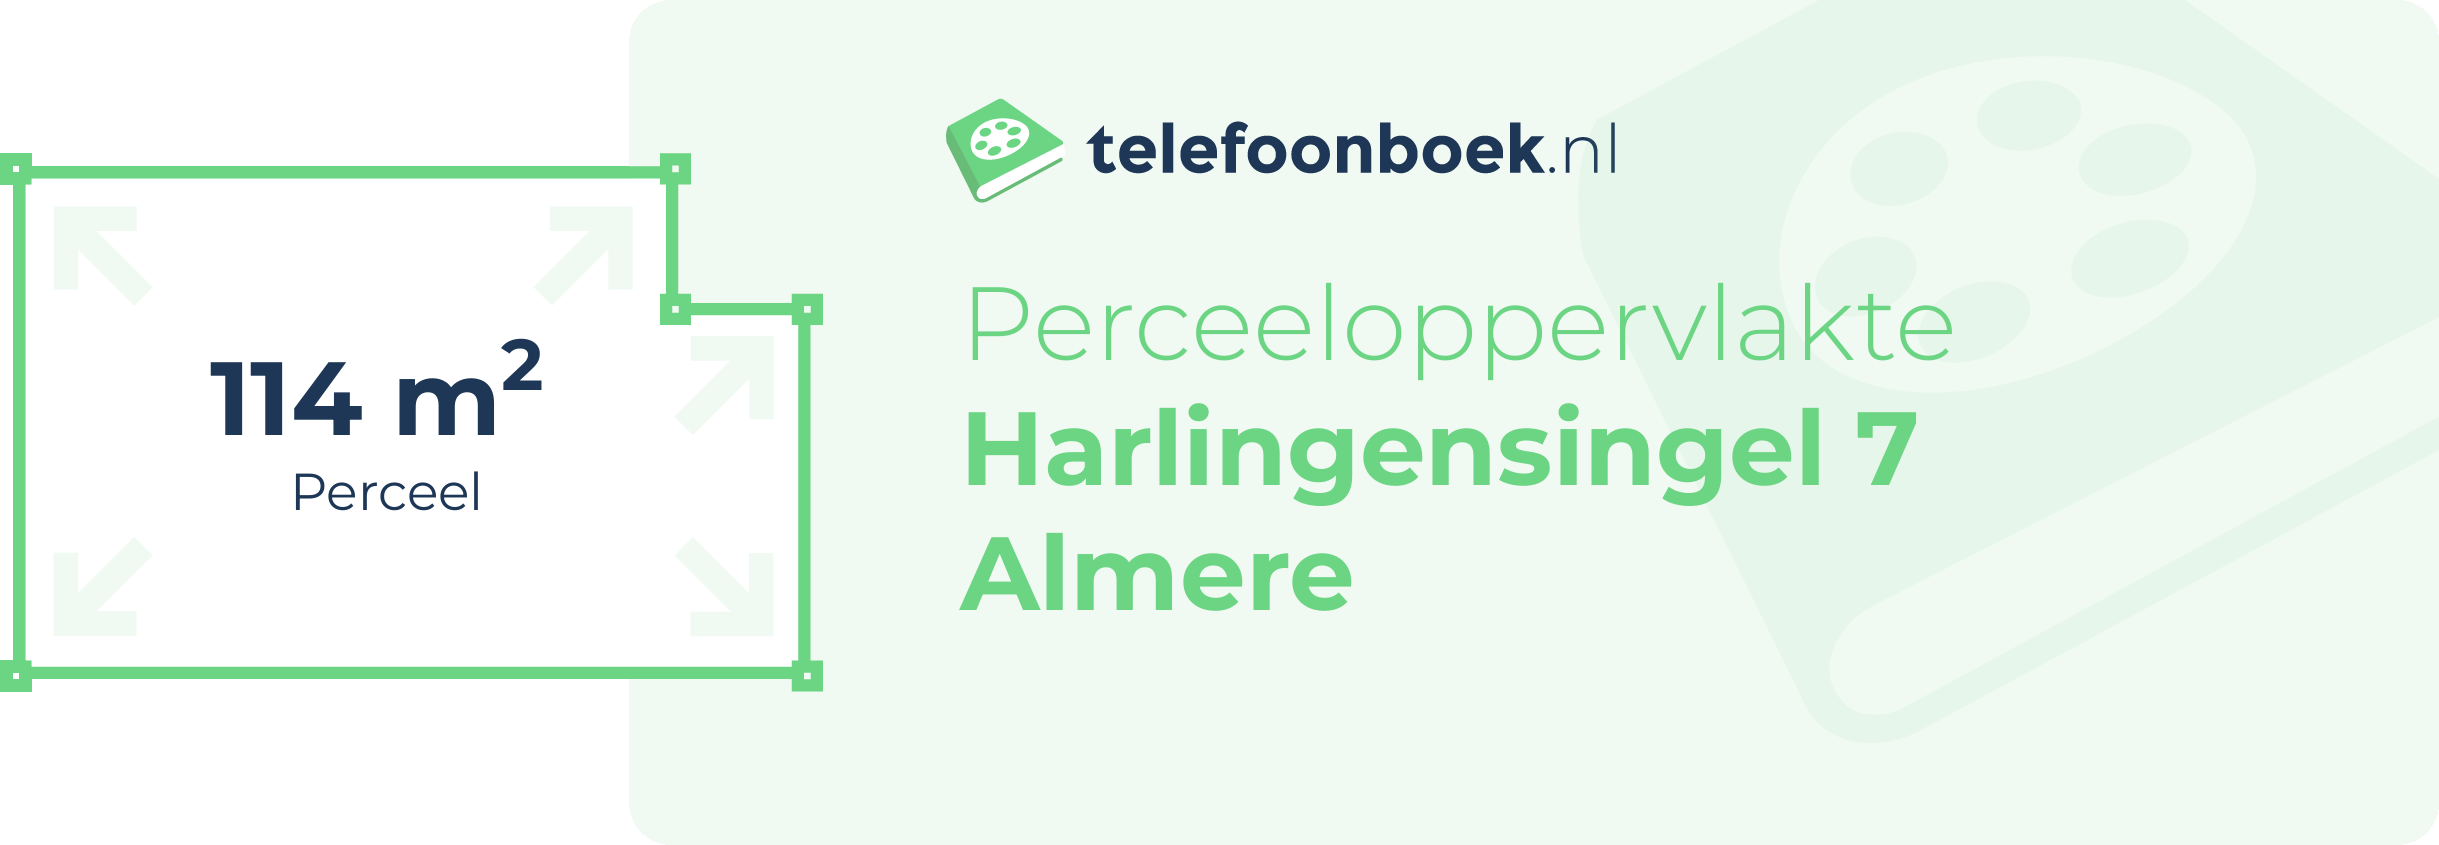 Perceeloppervlakte Harlingensingel 7 Almere